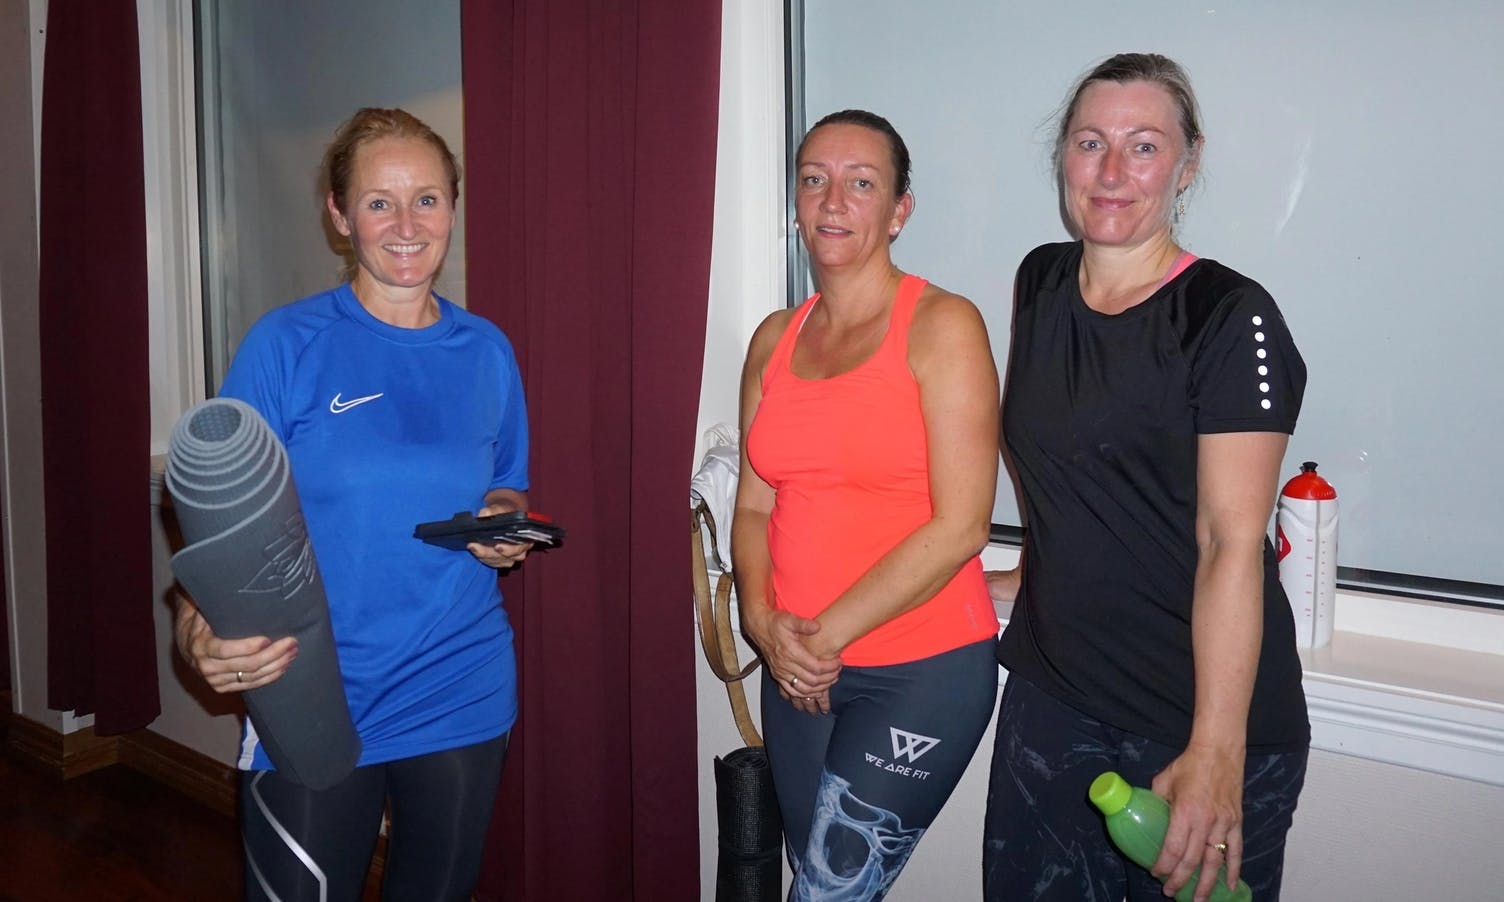 F.v.: Sonja, Rebekka og Wenche er nøgd med korleis Marianne får dei til å yta. (Foto: KVB)